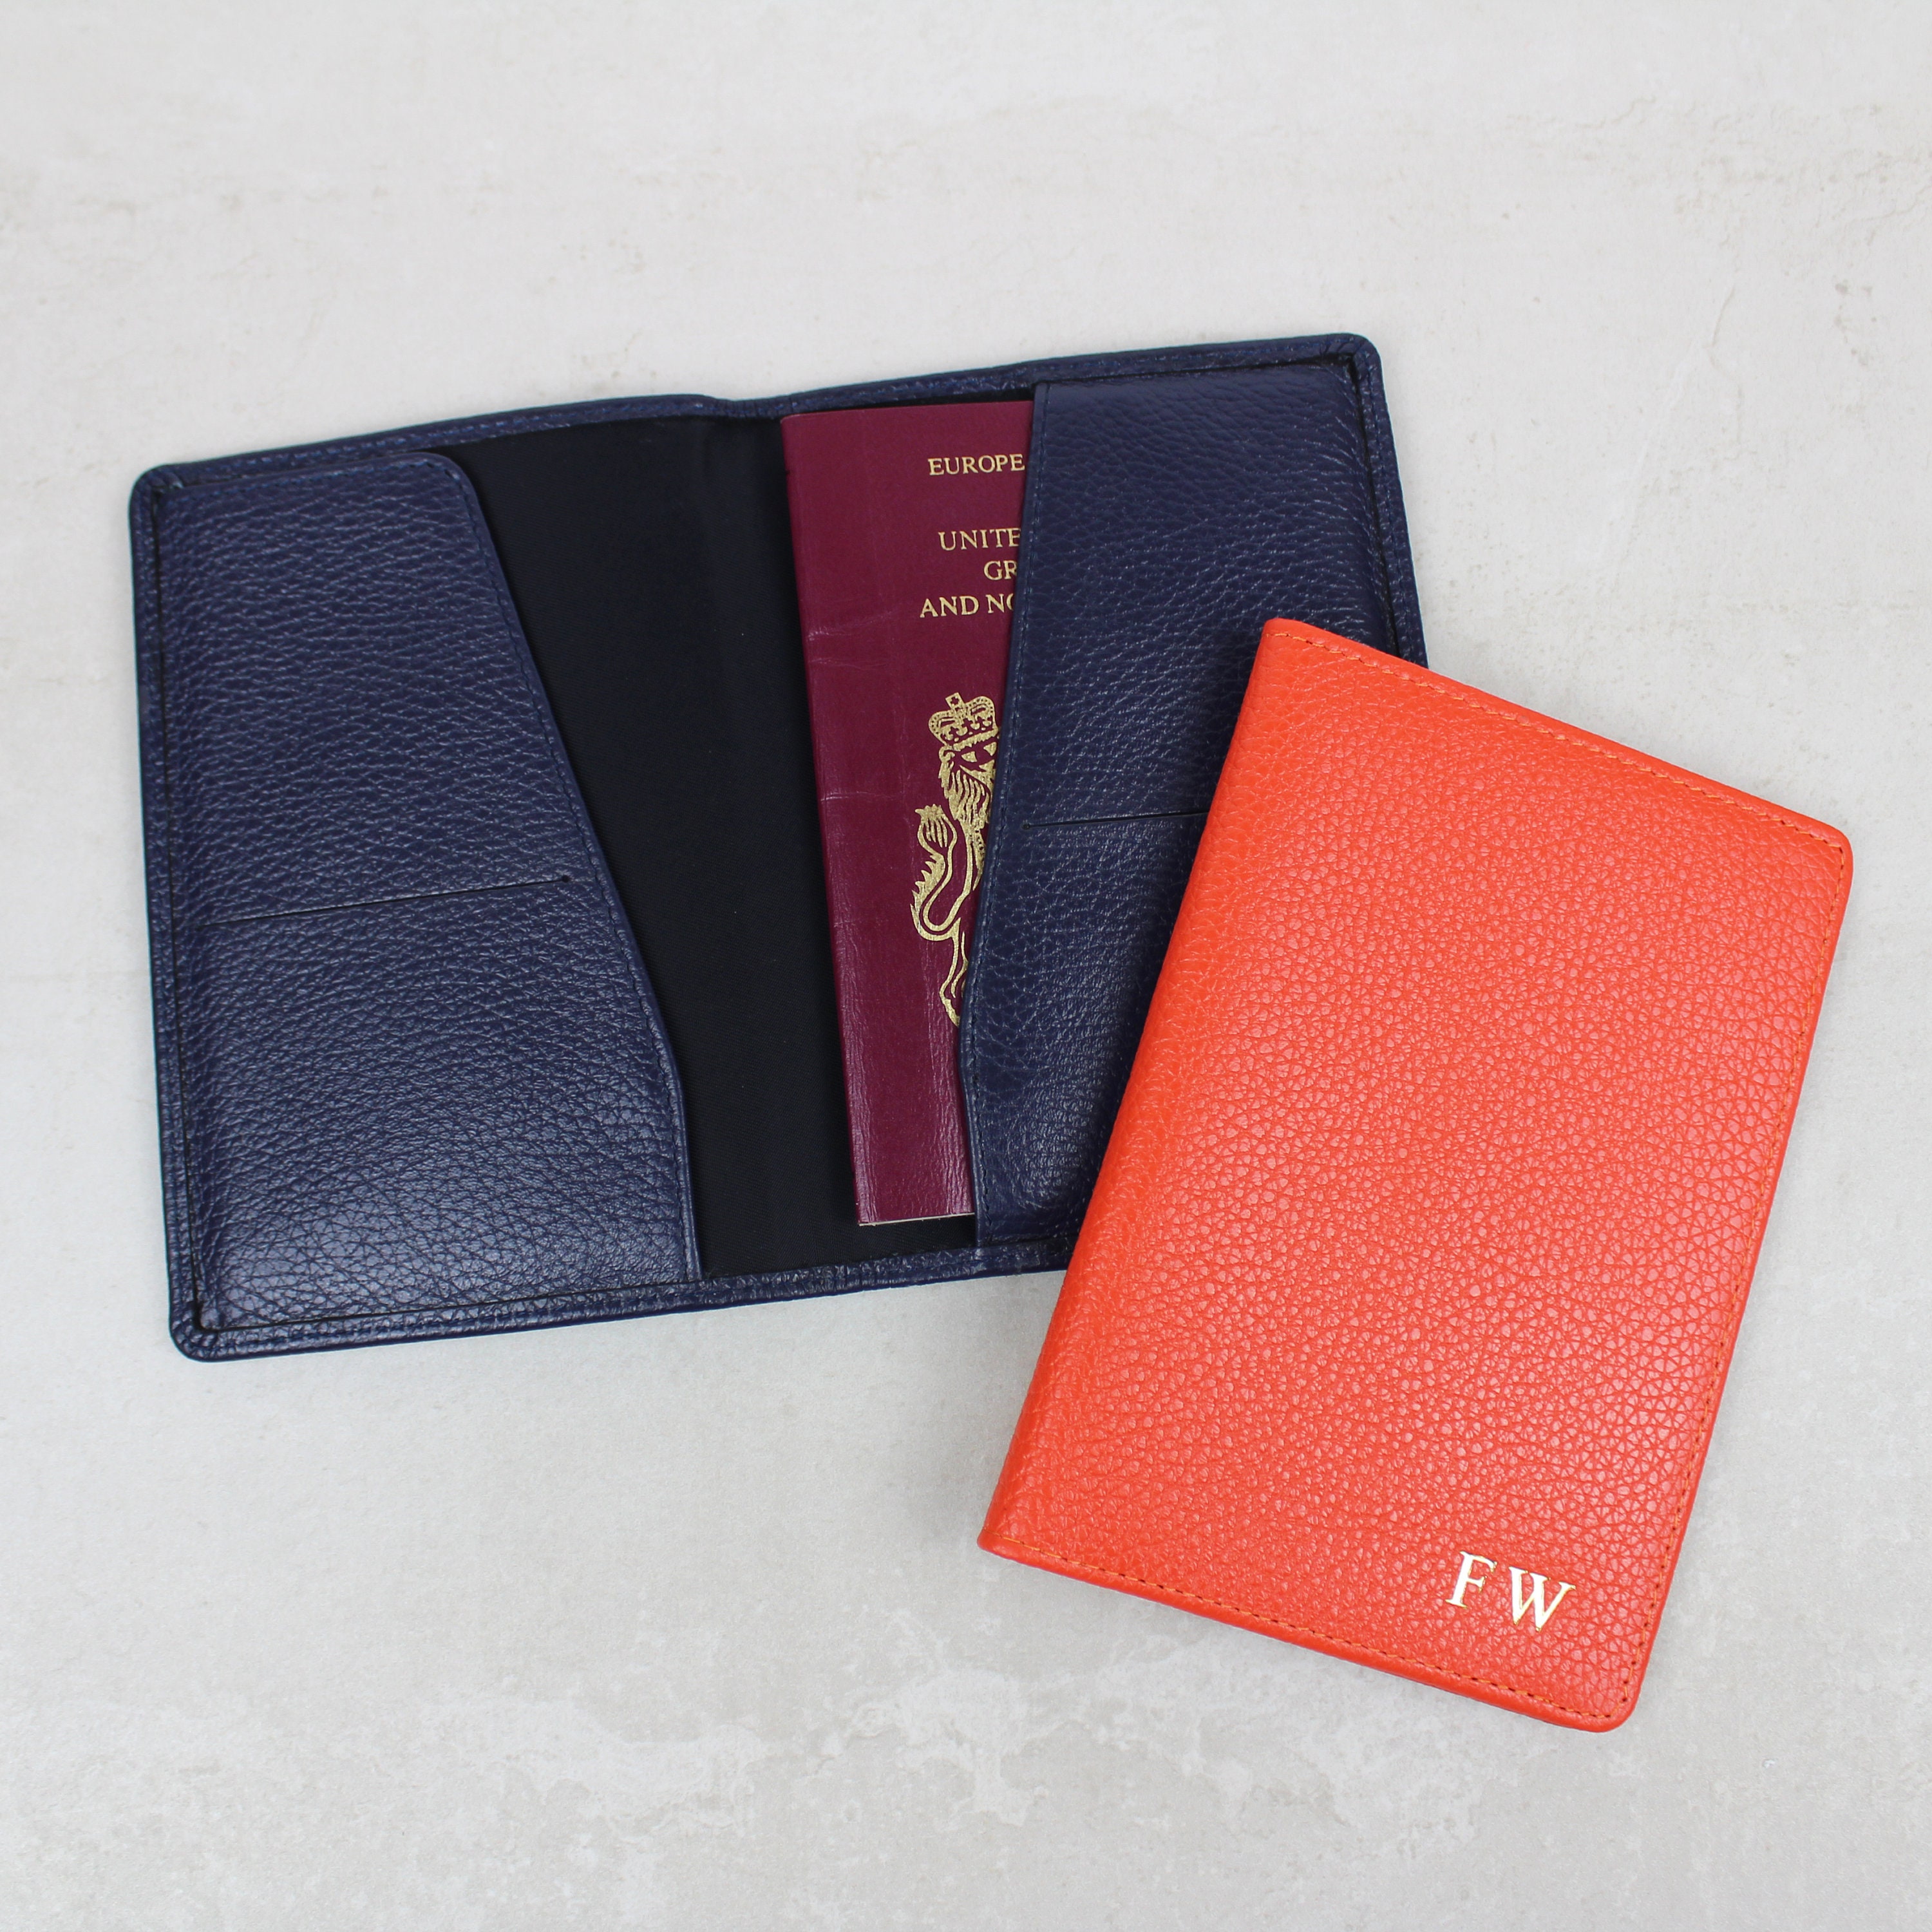 Red Saffiano Slim Passport Wallet 72 Smalldive